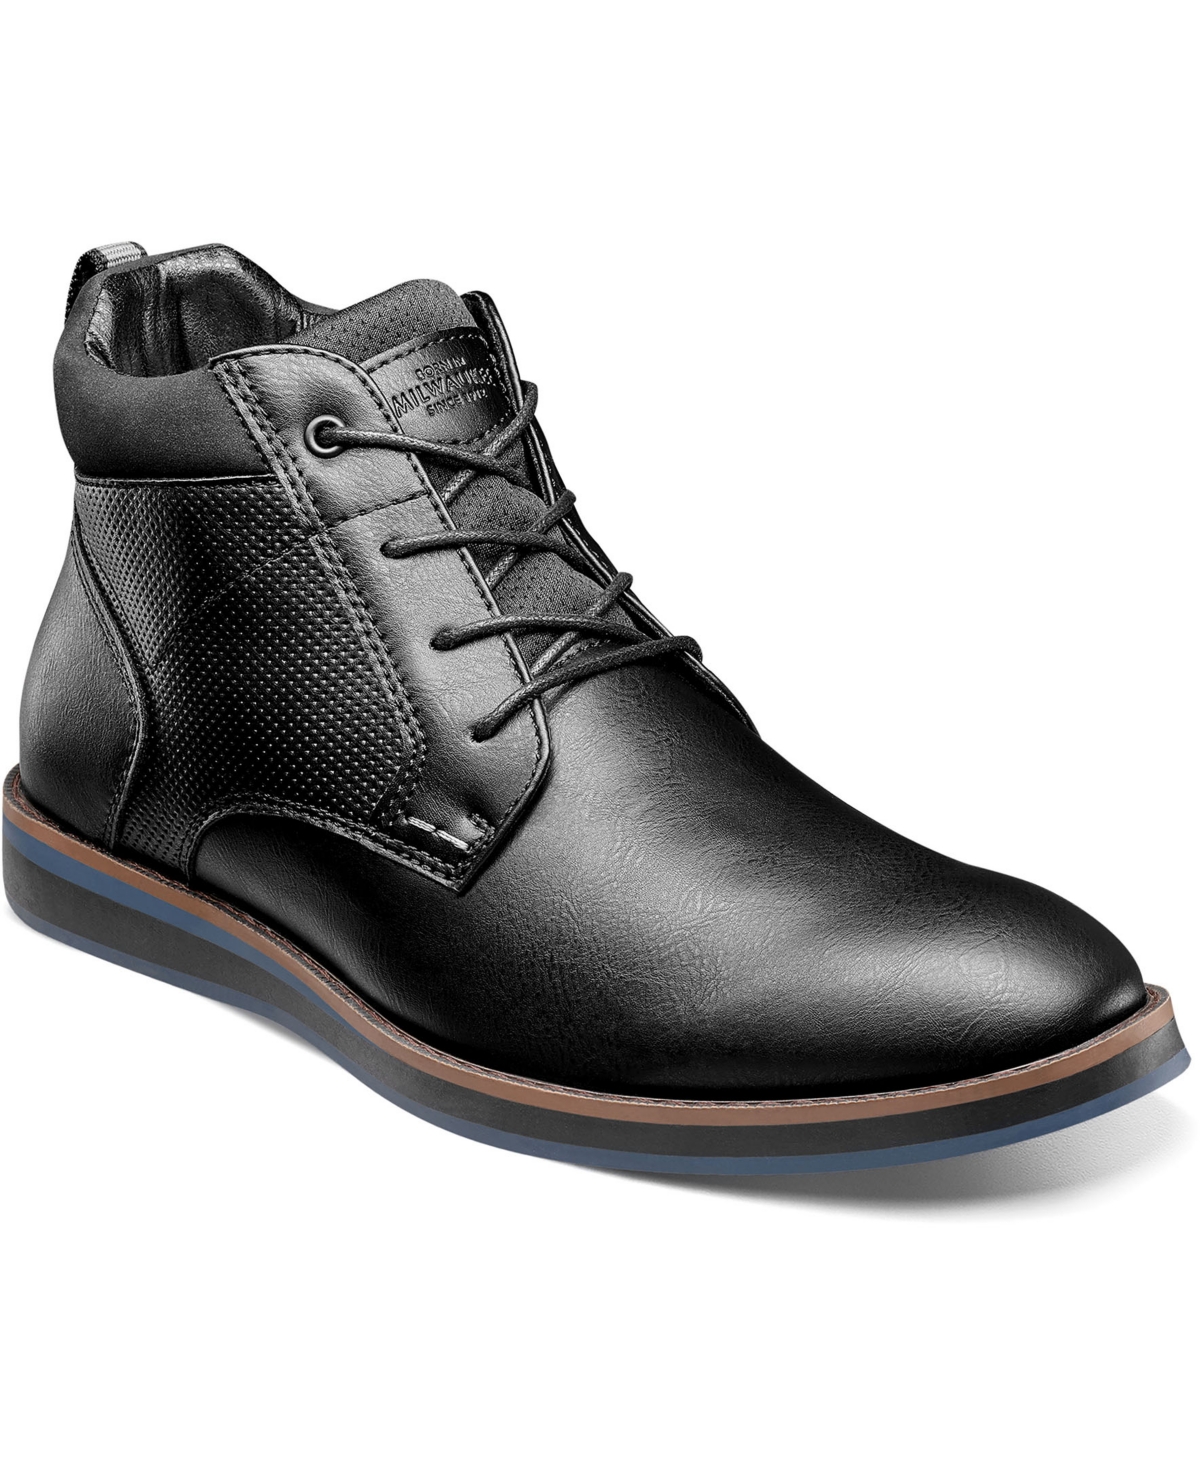 Men's Circuit Dc Plain Toe Boots - Black